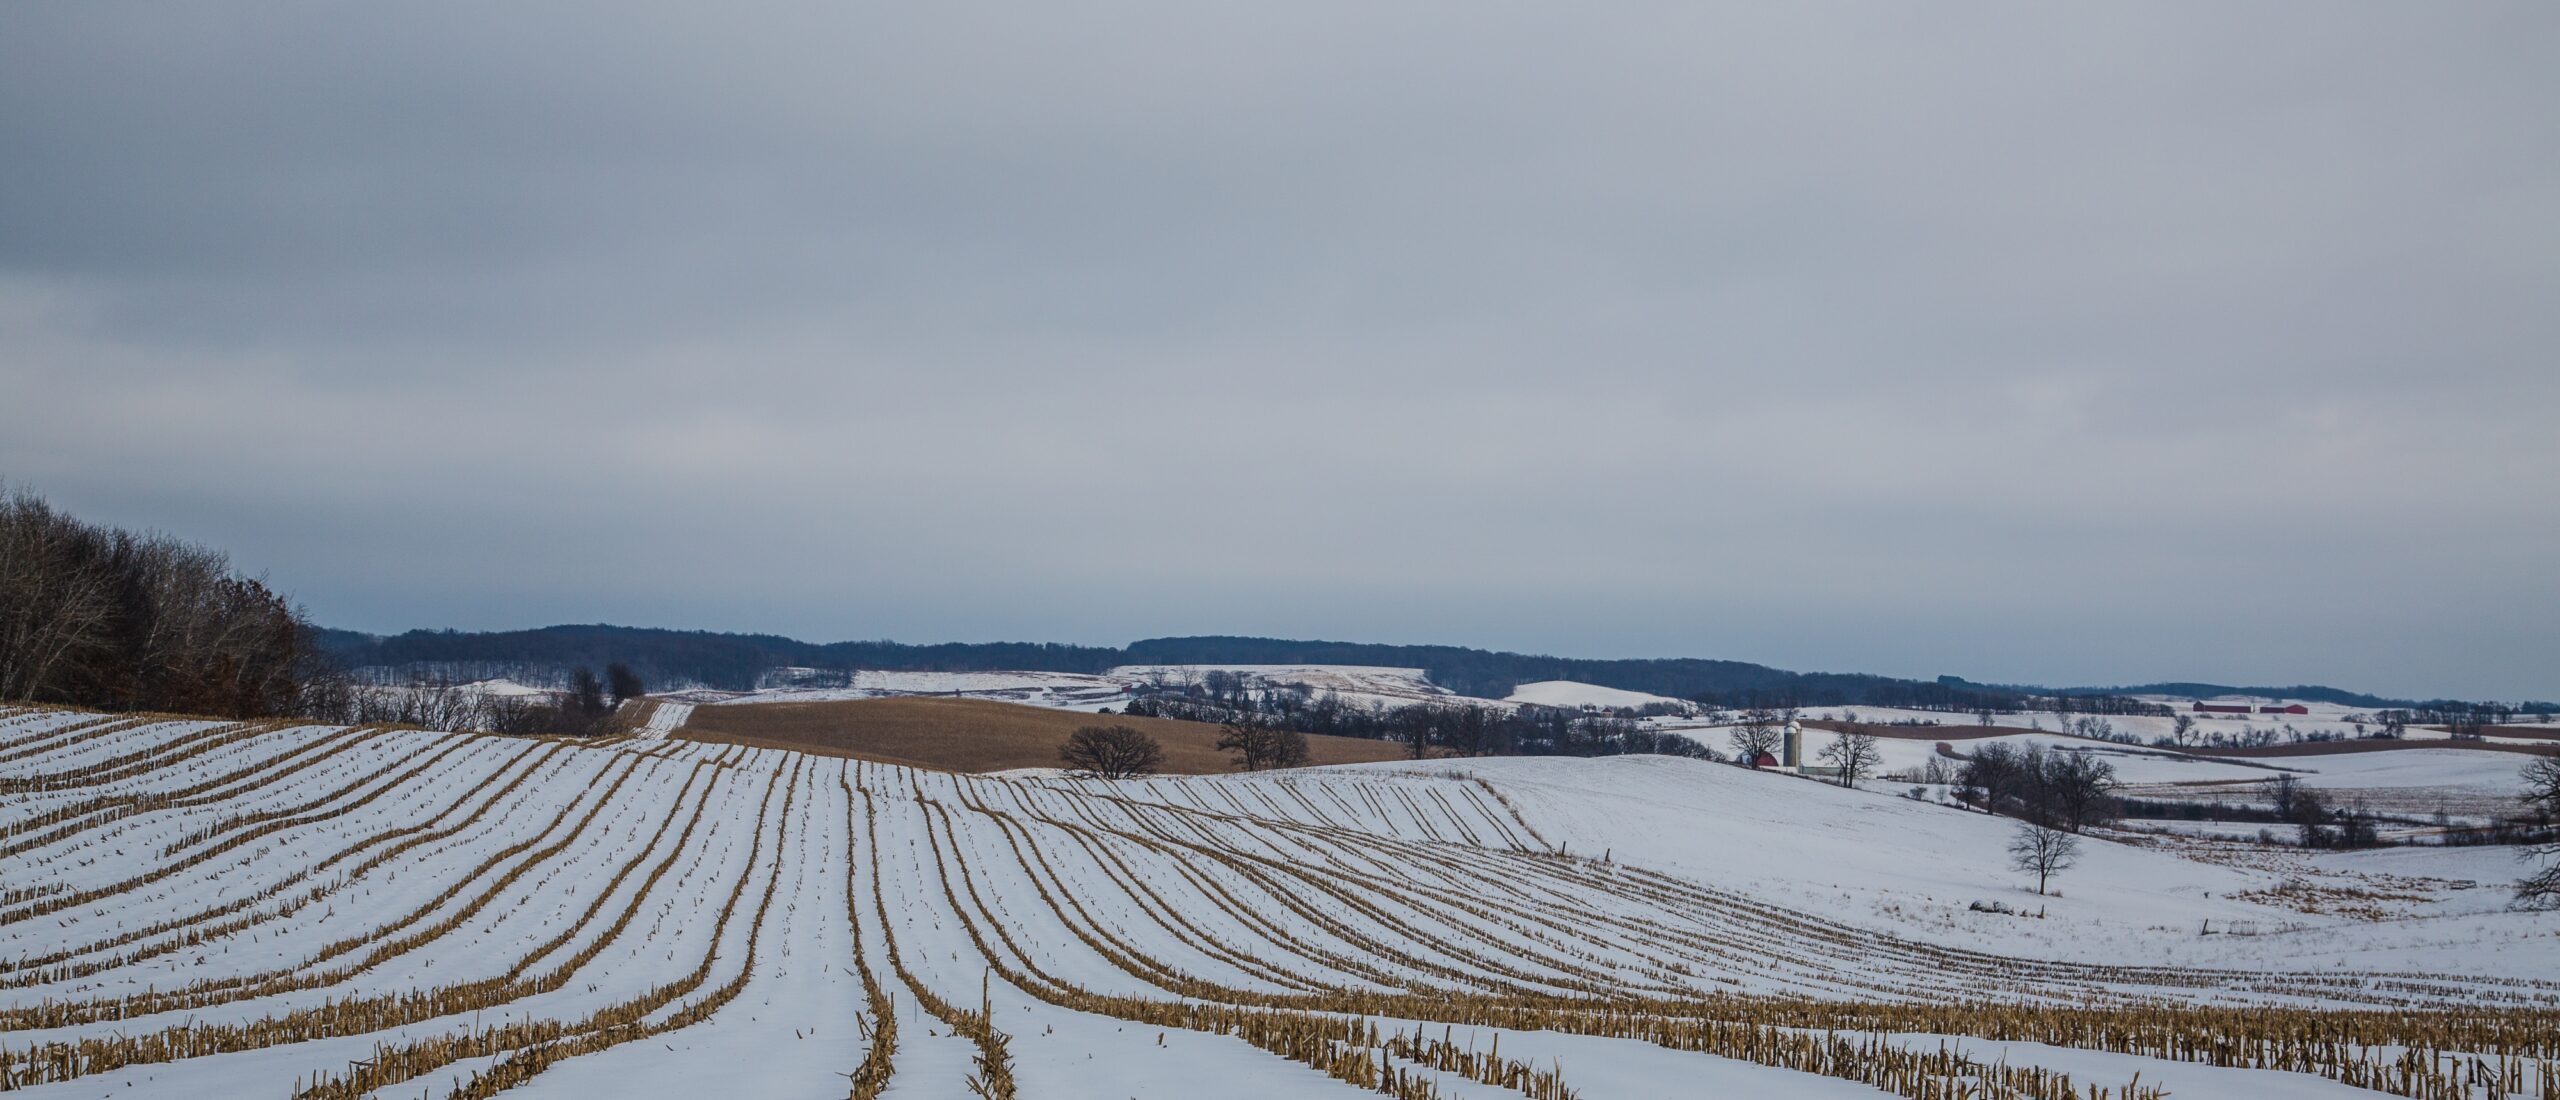 Farm fields in Wisconsin